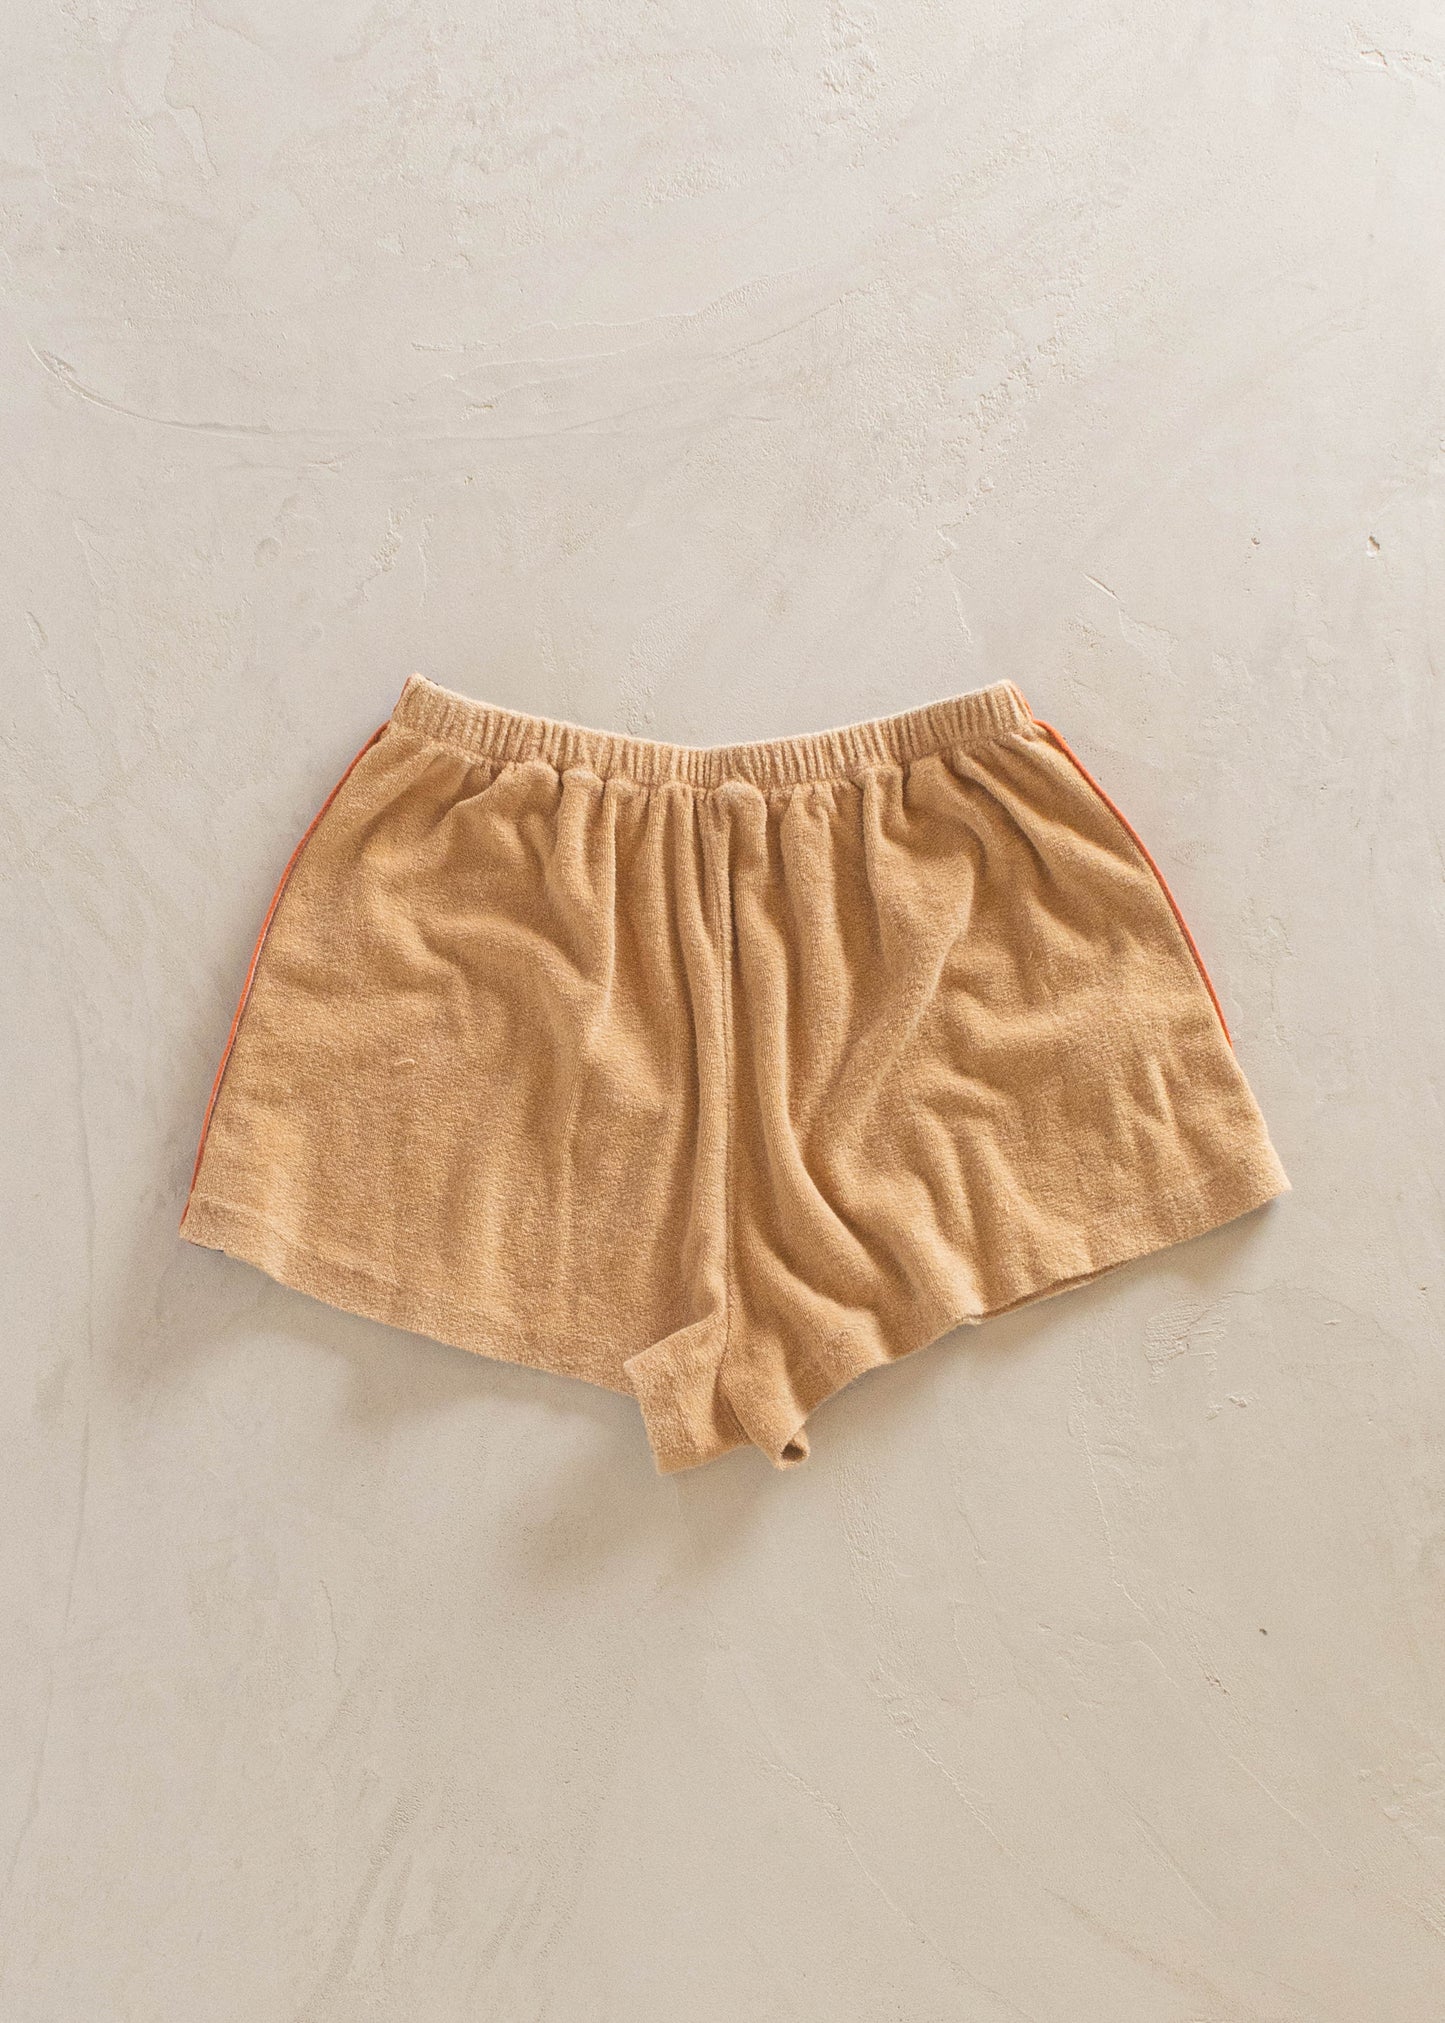 1970s Central Park Terry Cloth Short Set Size XS/S